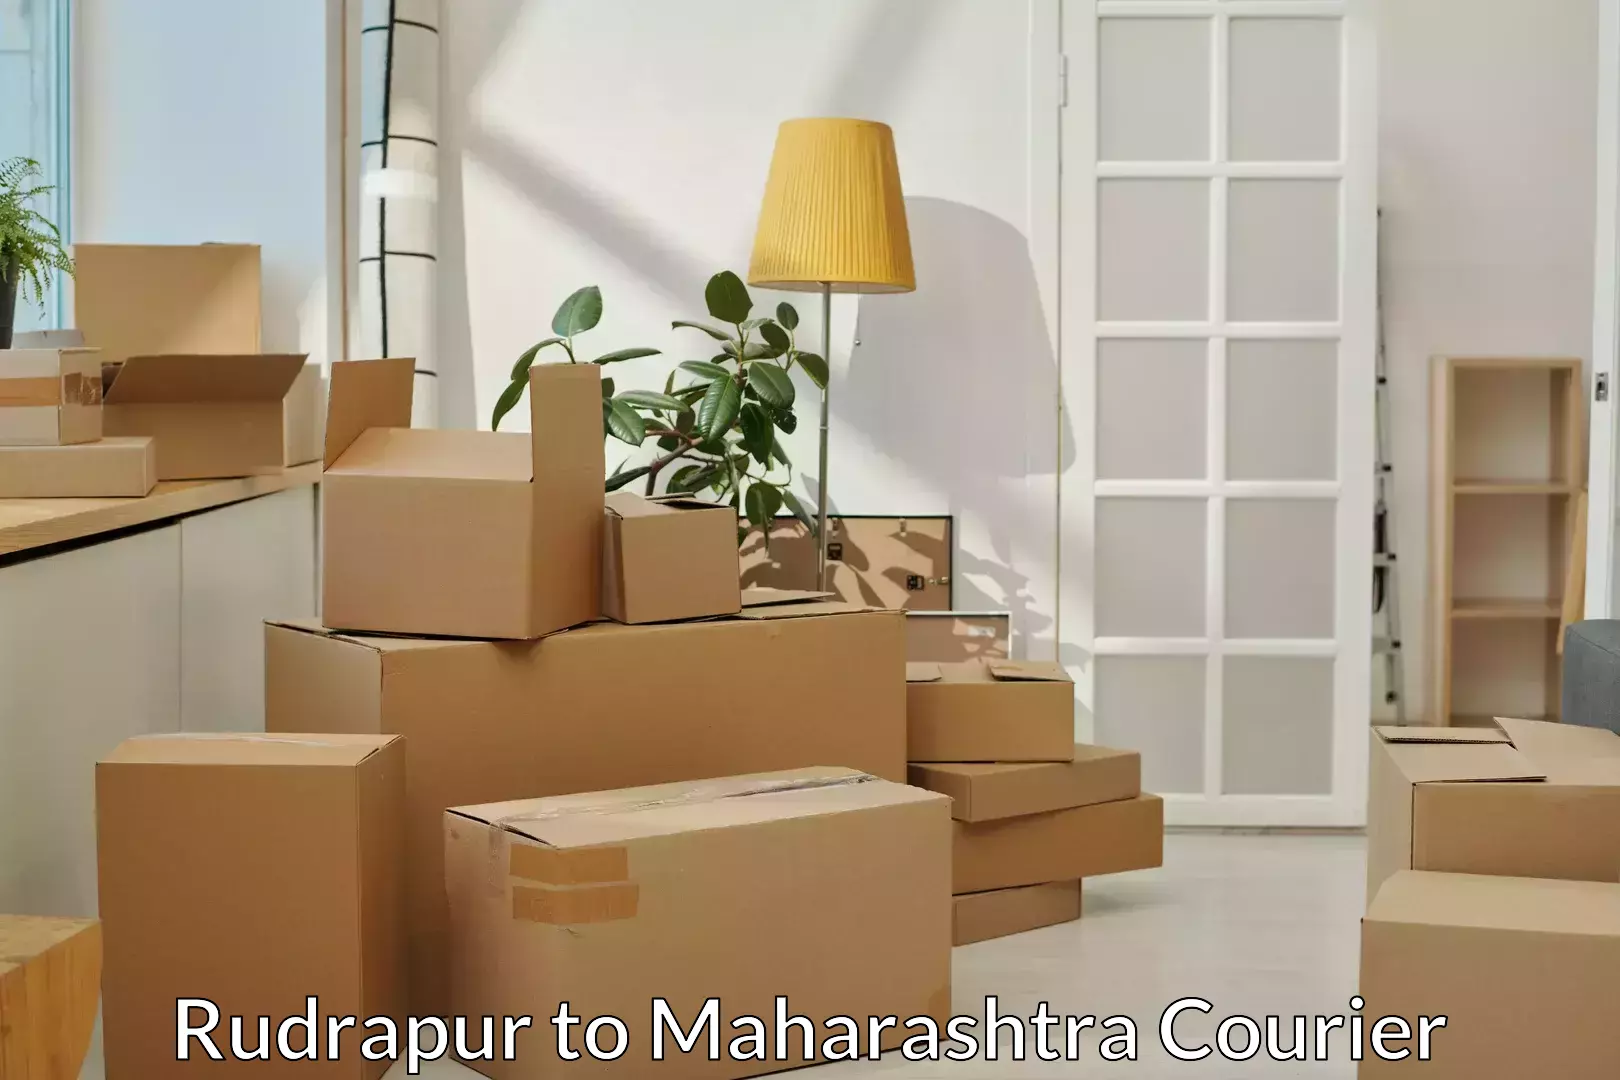 Residential furniture transport Rudrapur to IIT Mumbai